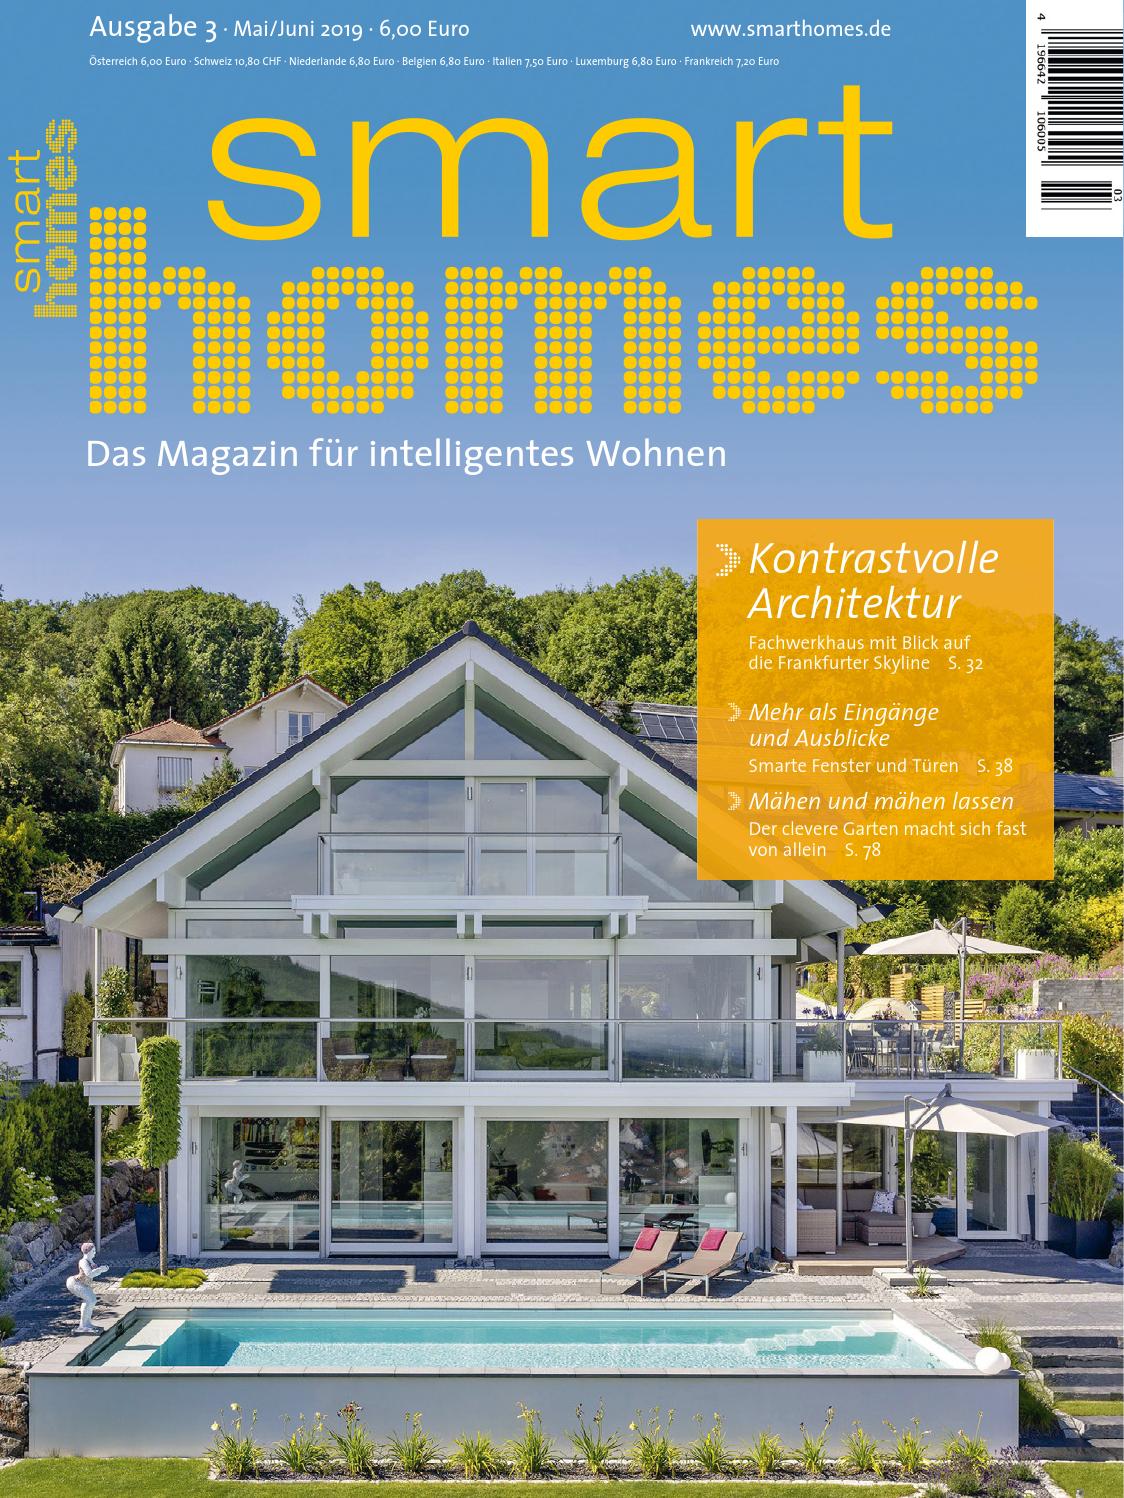 Wohnen Und Garten Abo Genial Smart Homes 3 2019 by Presspad issuu